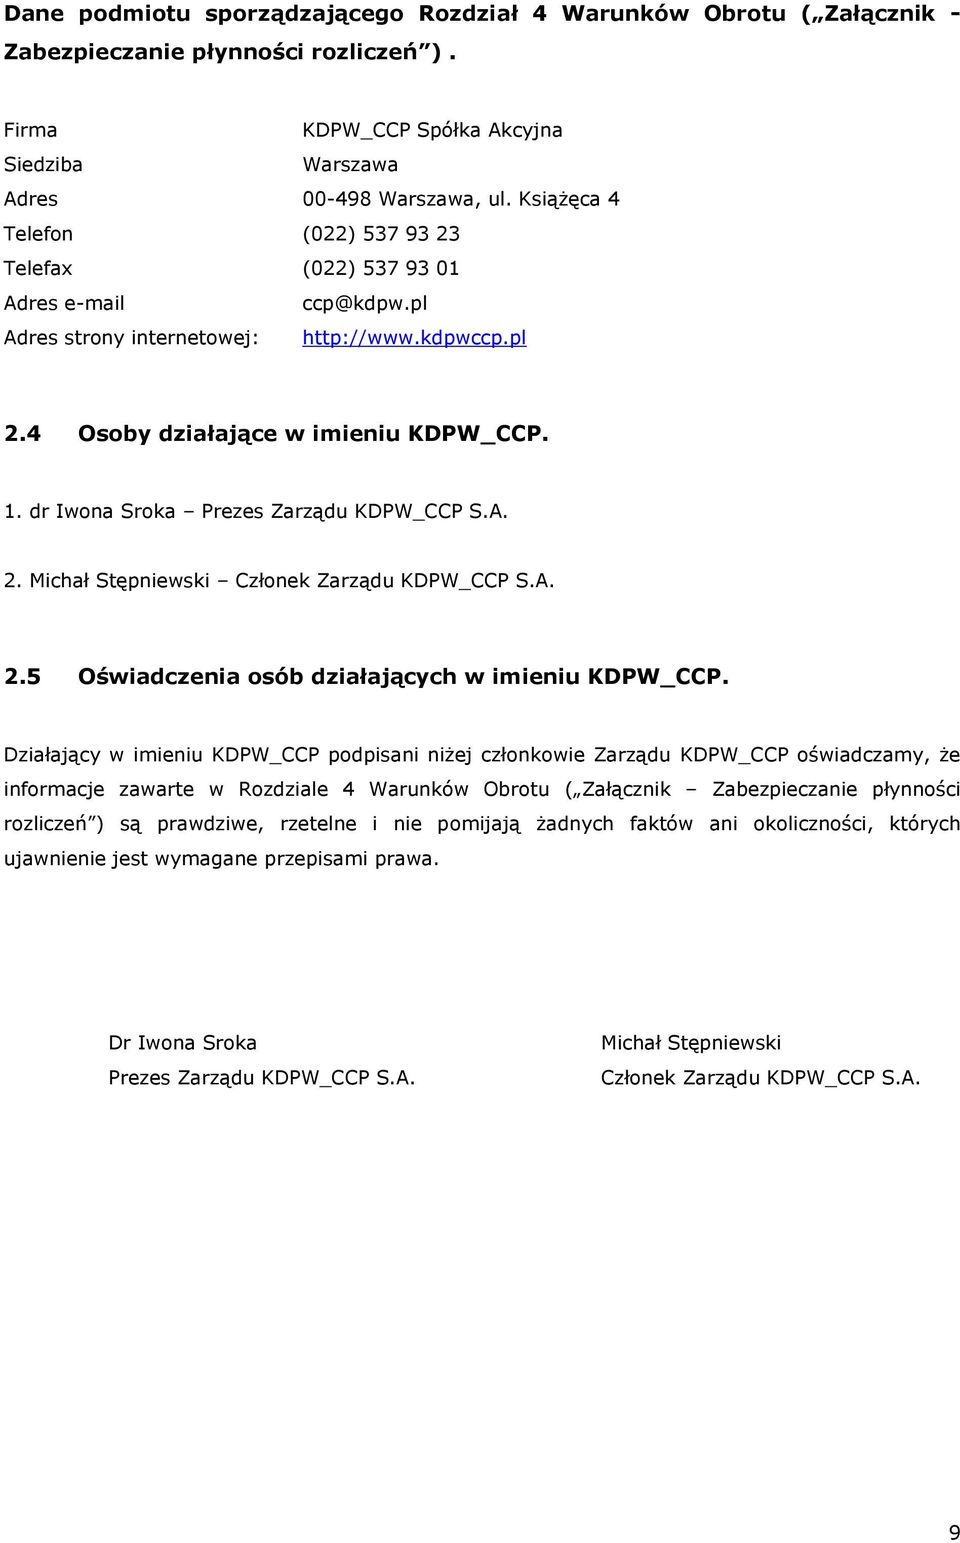 dr Iwona Sroka Prezes Zarządu KDPW_CCP S.A. 2. Michał Stępniewski Członek Zarządu KDPW_CCP S.A. 2.5 Oświadczenia osób działających w imieniu KDPW_CCP.